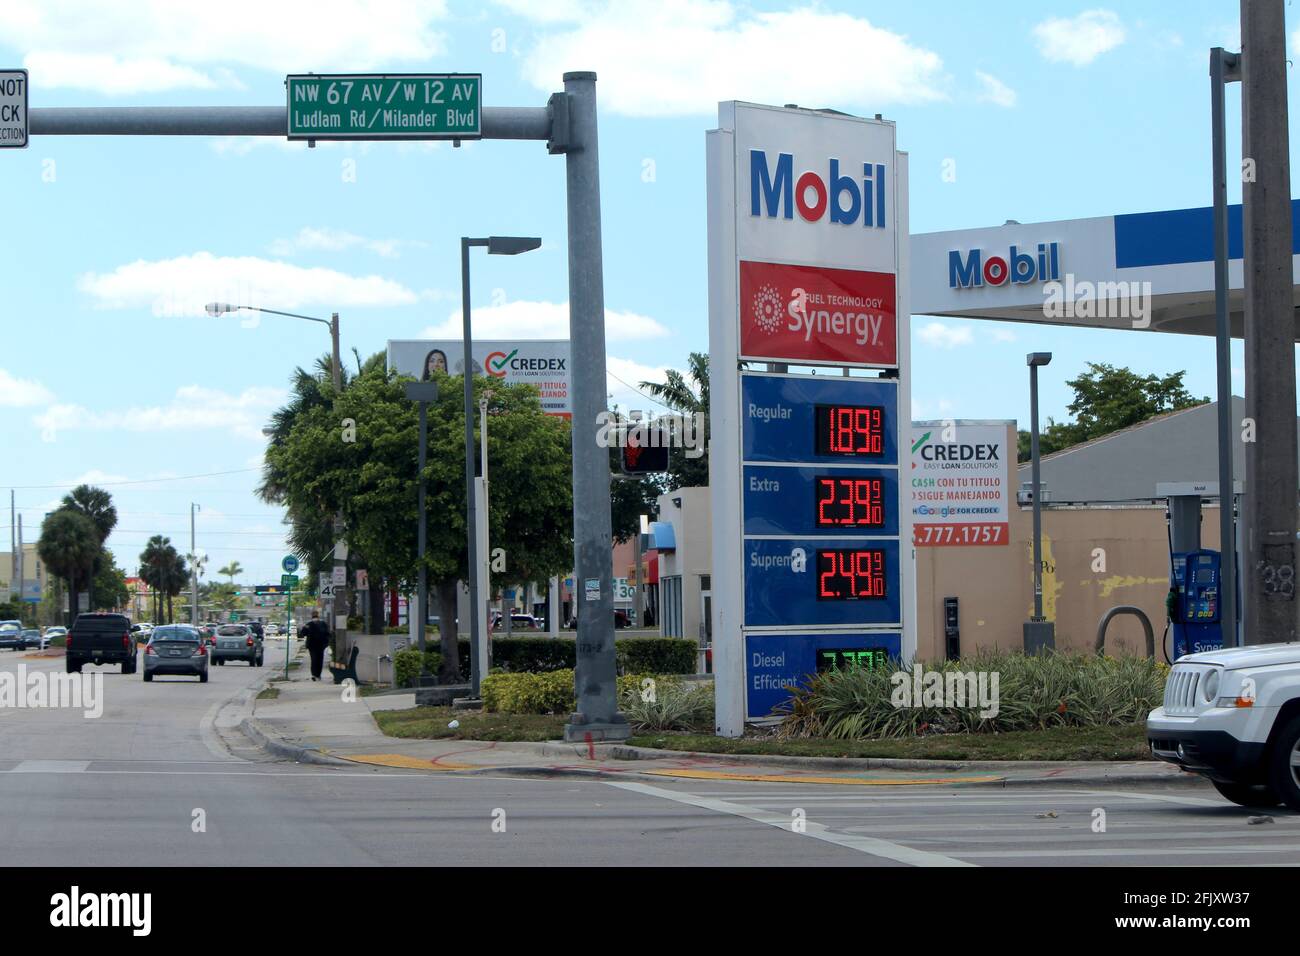 La stazione di benzina Mobil sul 12 ° viale abbassa i prezzi in modo significativo a causa della pandemia di coronavirus noto anche come COVID-19 nella città di Hialeah, FL. Foto Stock